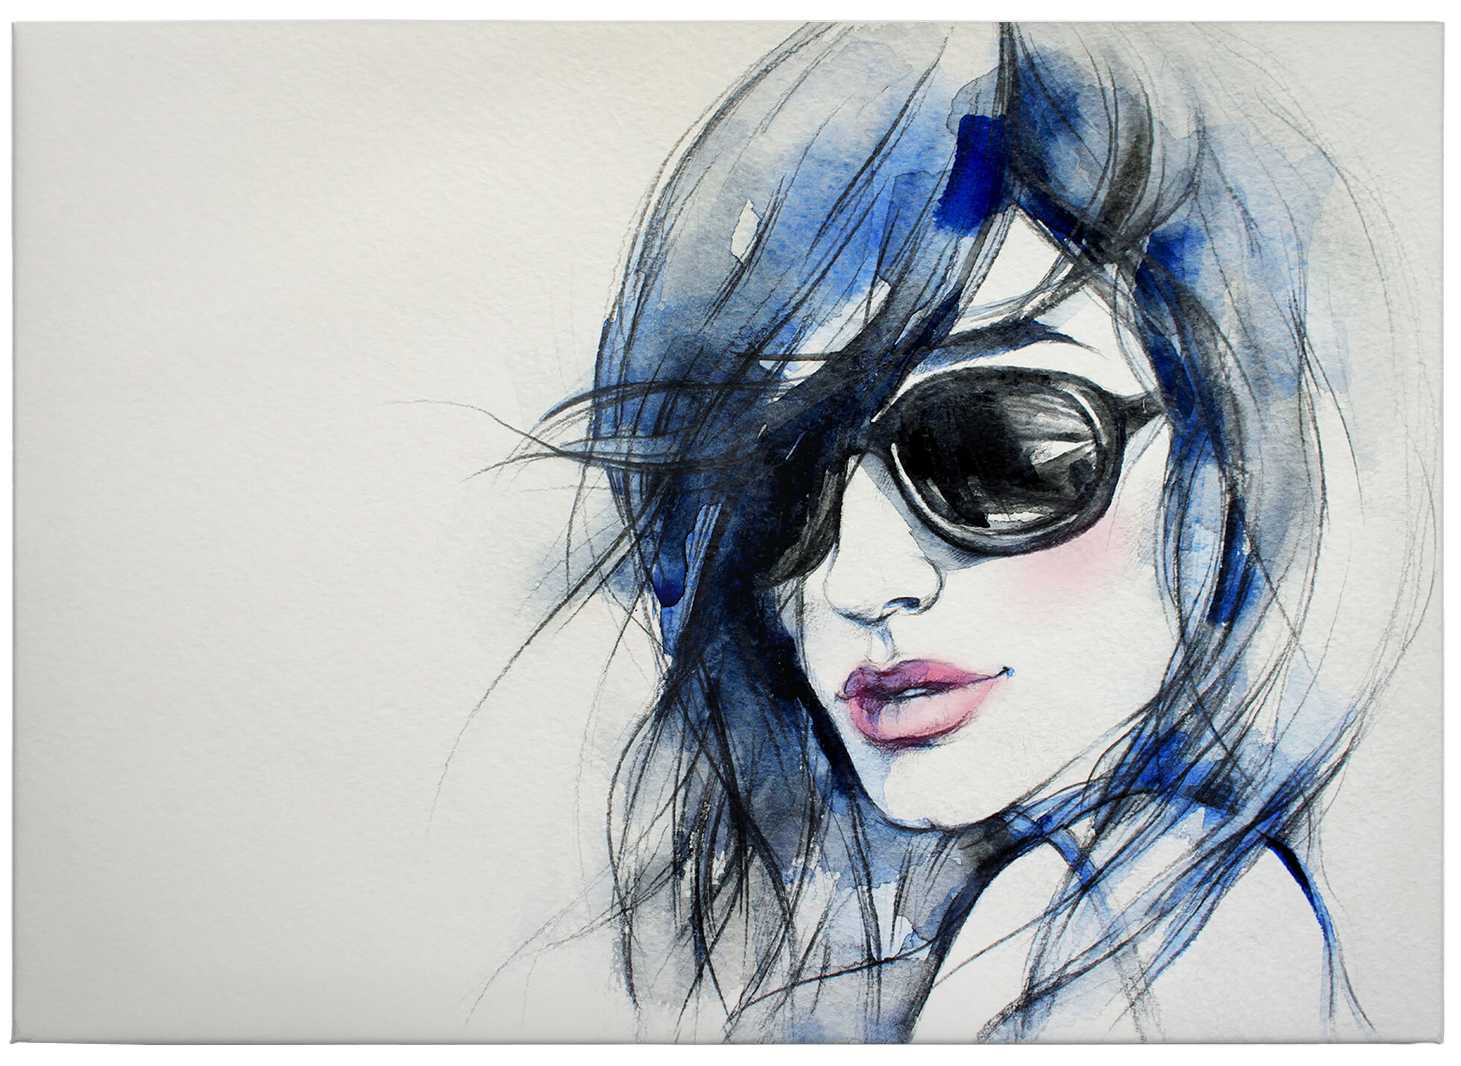             Cuadro Acuarela Retrato Mujer con Gafas de Sol - 0,70 m x 0,50 m
        